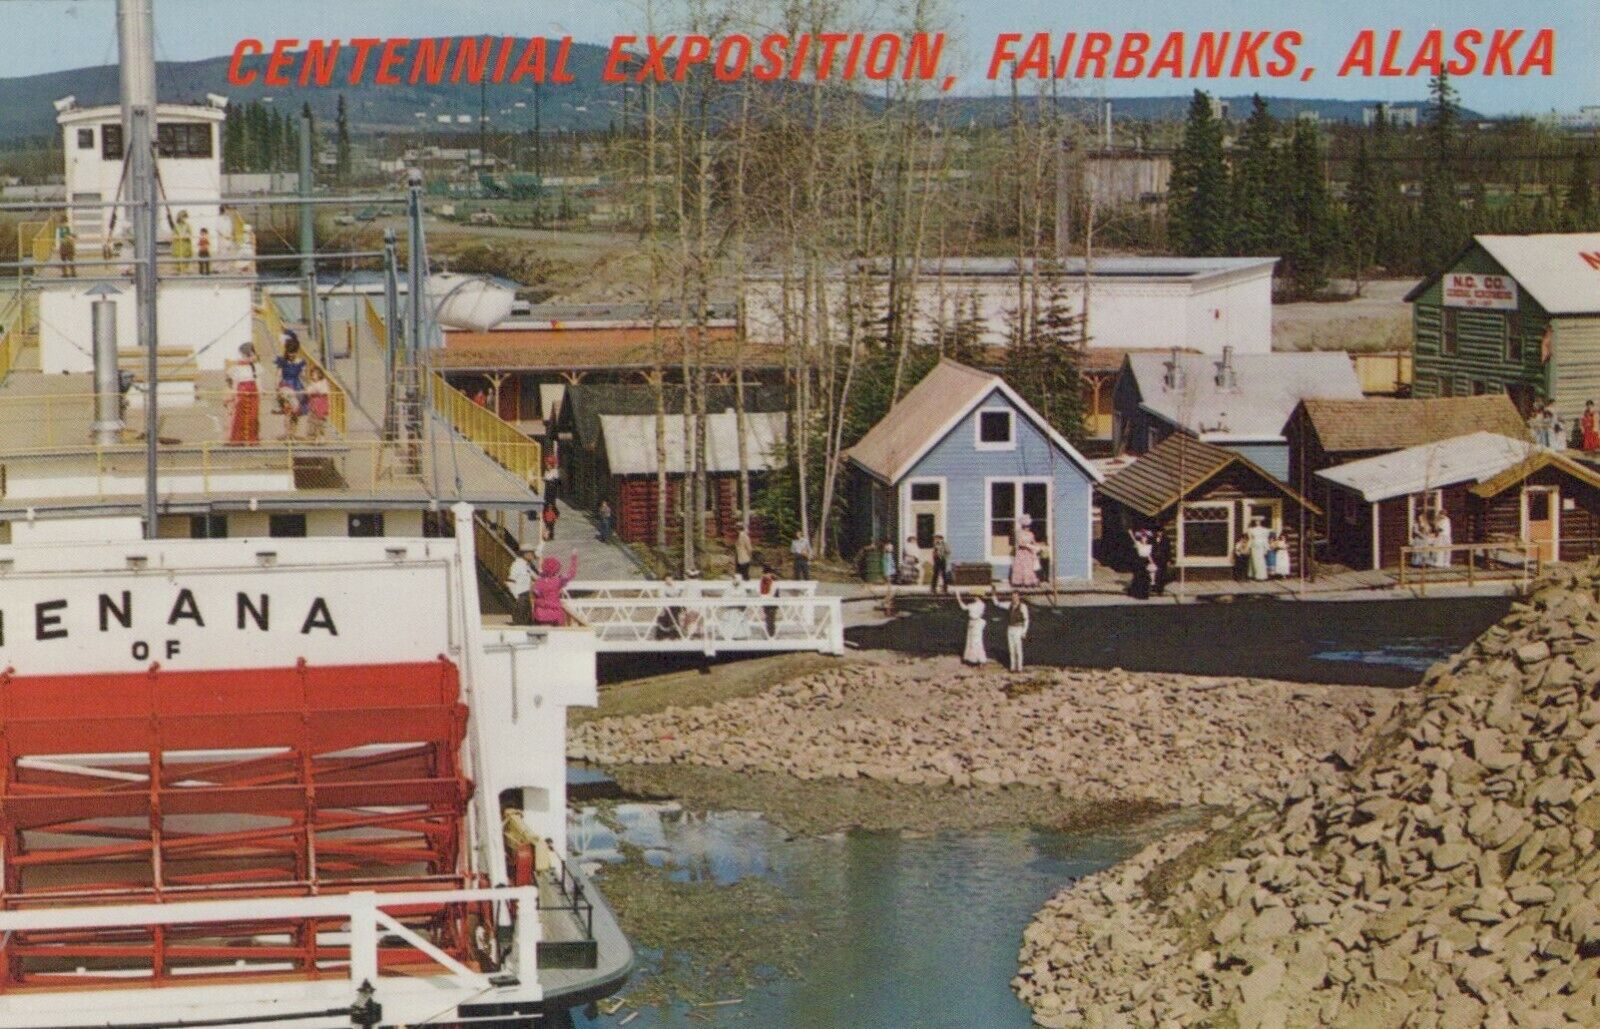 Centennial Exposition Fairbanks Alaska Vintage Chrome Post Card